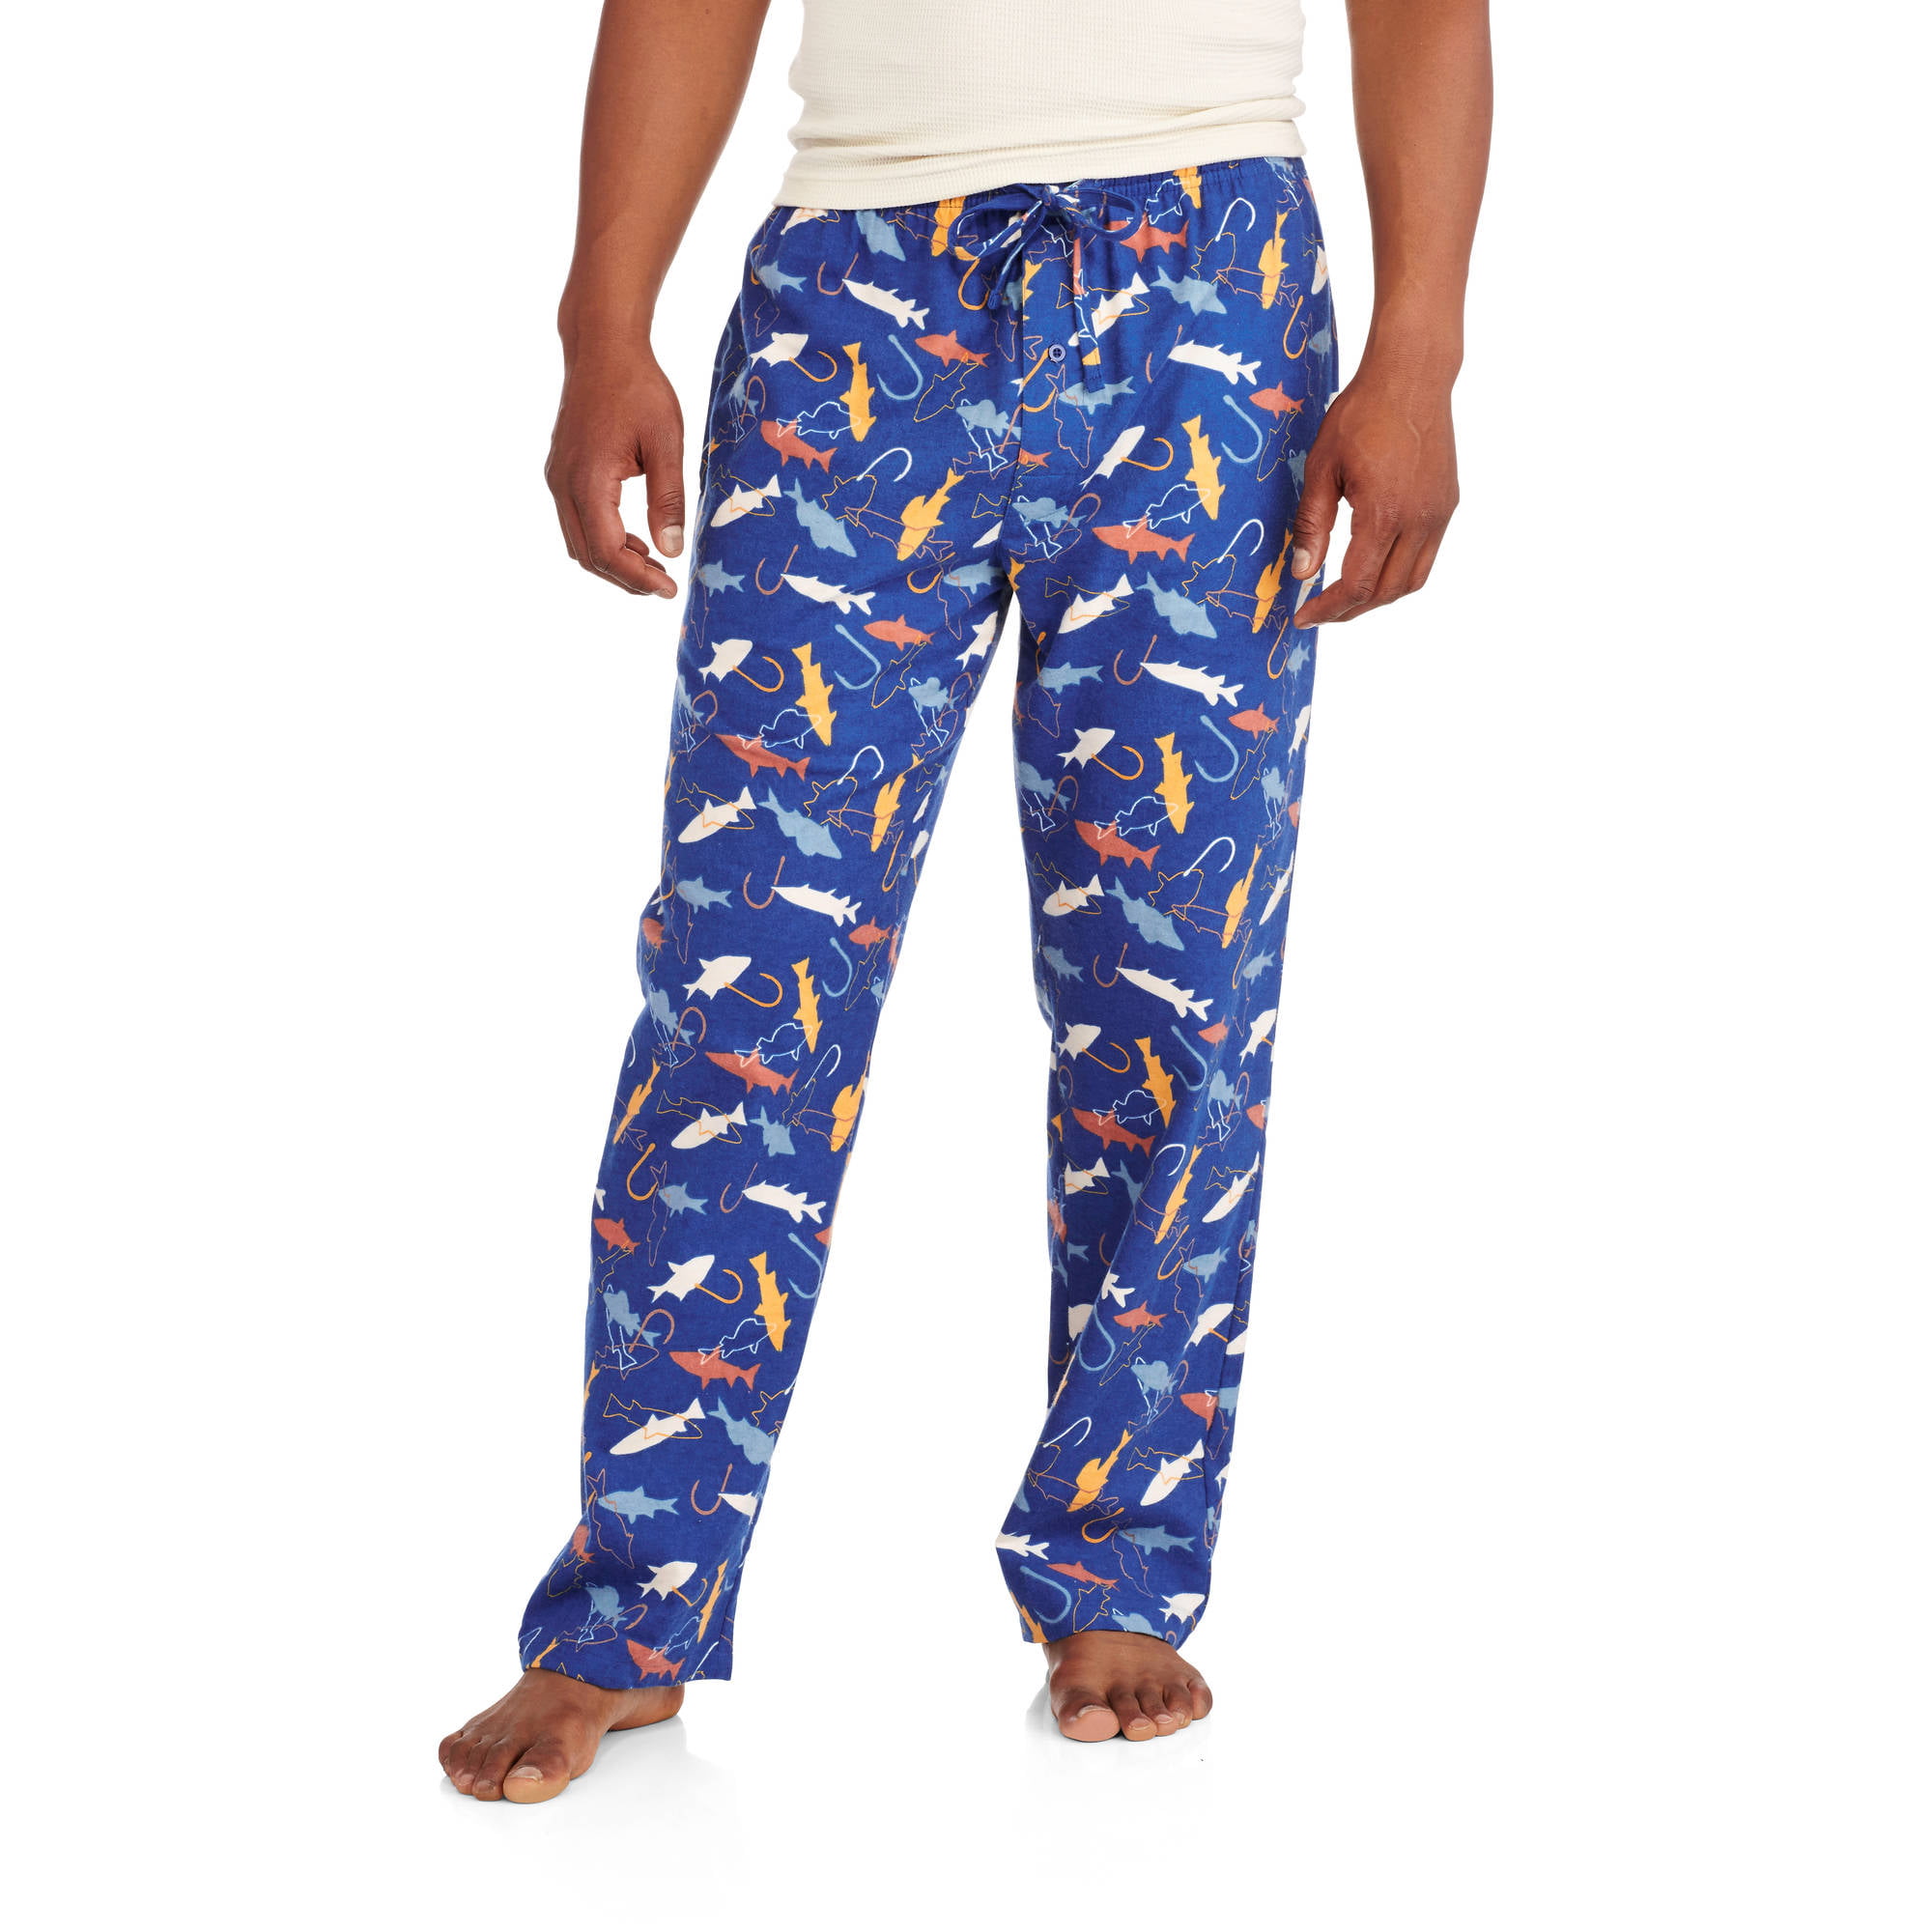 Big Men's Flannel Sleep Pants - Walmart.com